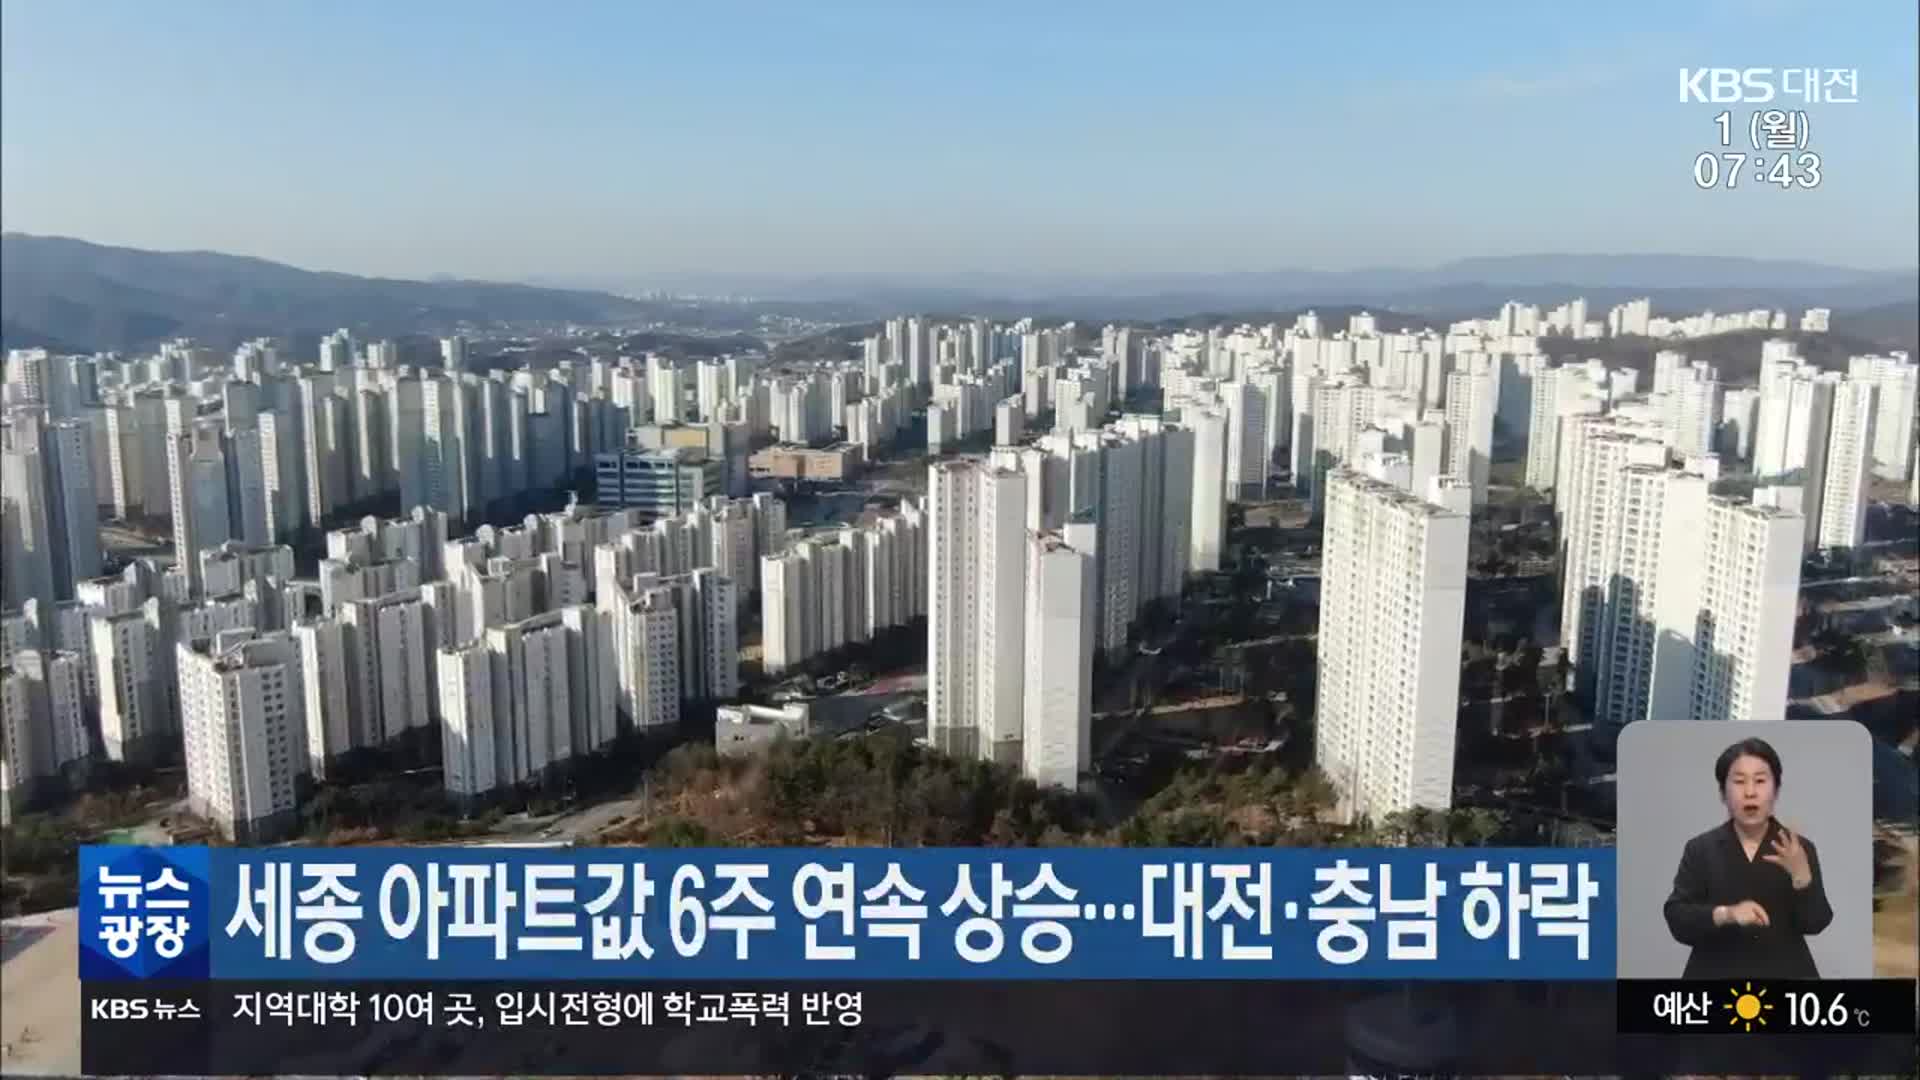 세종 아파트값 6주 연속 상승…대전·충남 하락